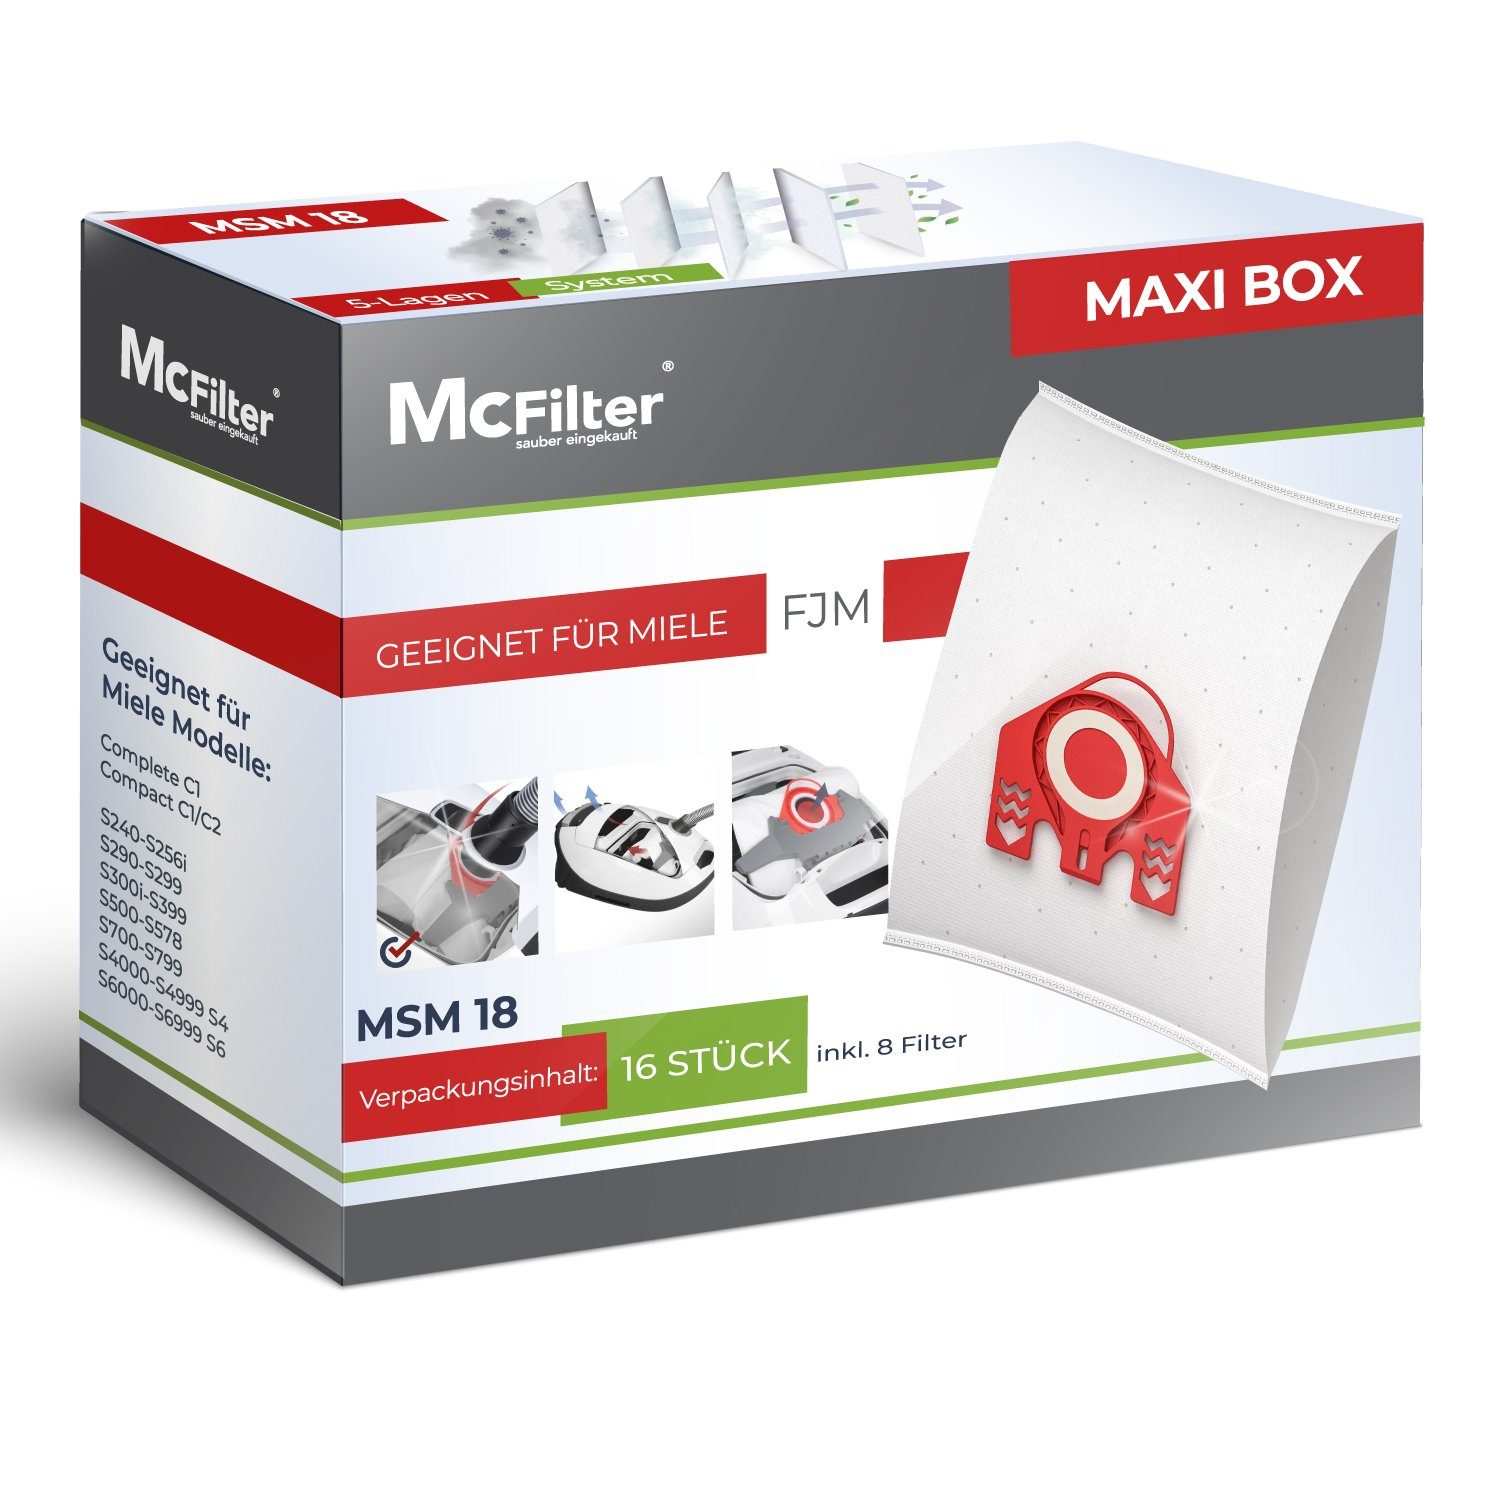 McFilter Staubsaugerbeutel MAXI BOX 16+8, passend für Miele Jazz Plus S371,  S712-1 Staubsauger, inkl. 8 Filter, 16 St., Top Miele Alternative zu  9917710, wie 10408420